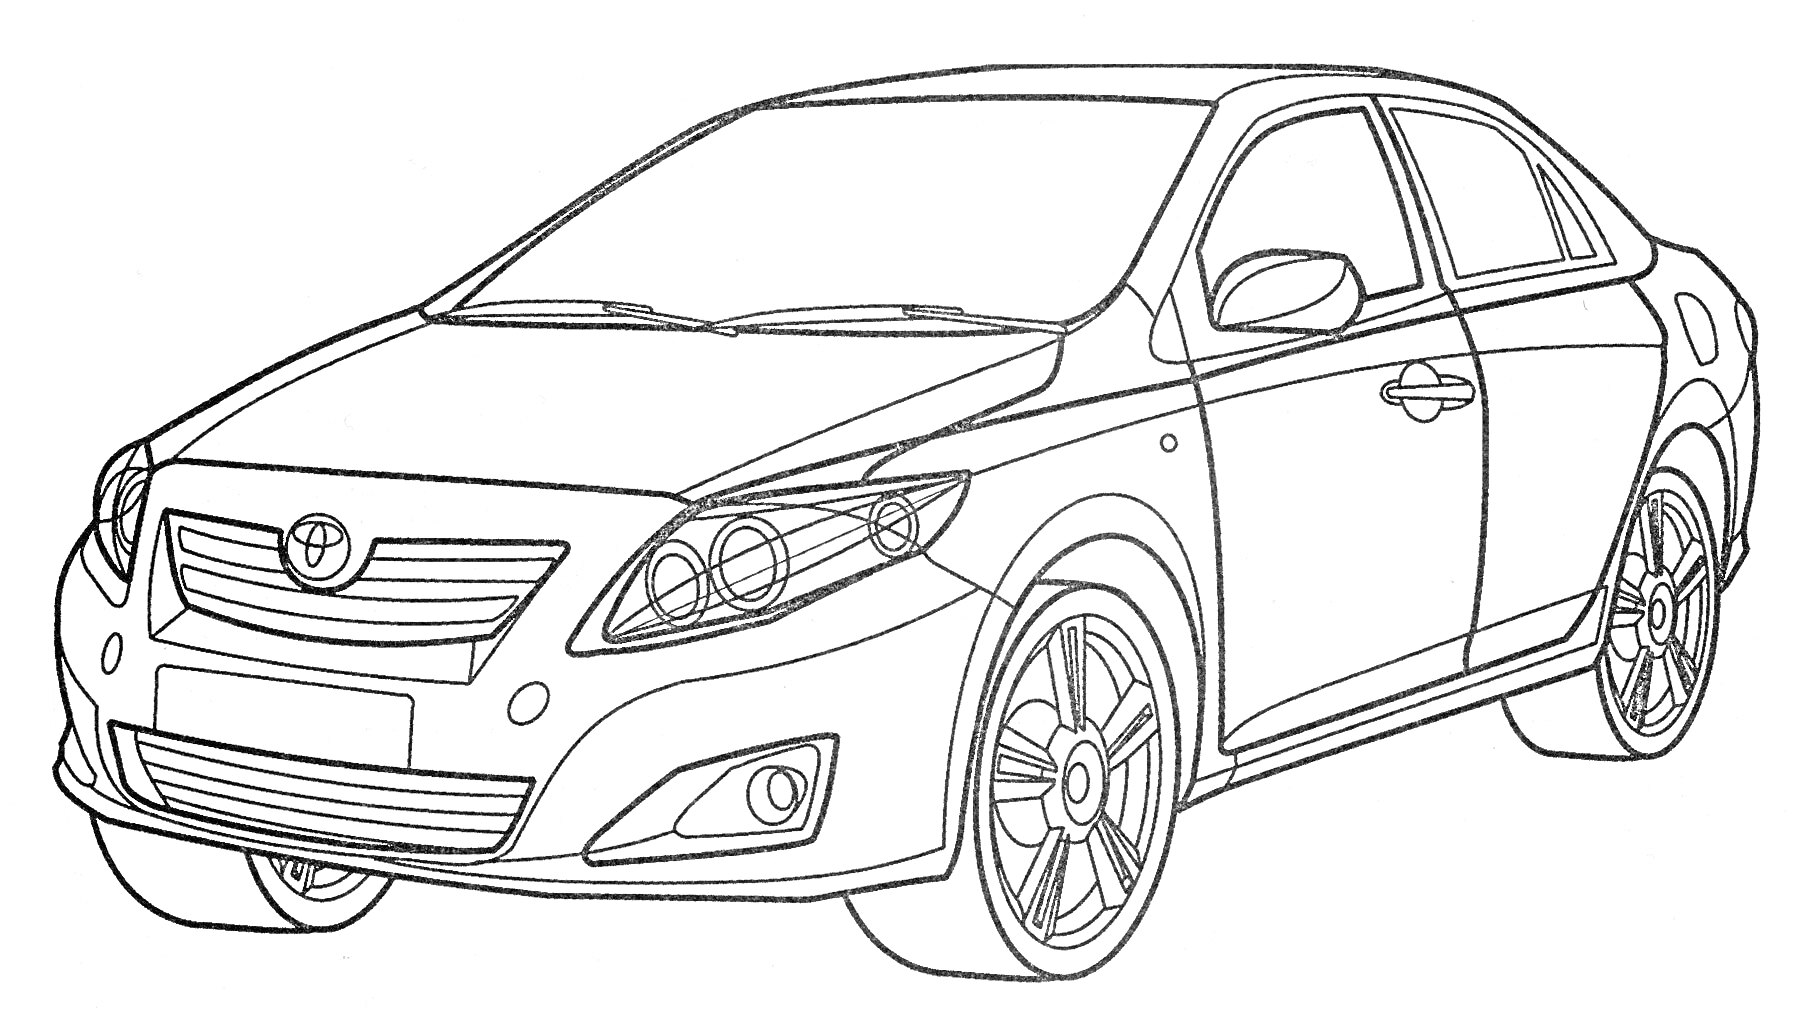 Раскраска Контурный рисунок автомобиля Toyota Corolla, вид спереди-сбоку, видны передние и задние фары, двери, капот, лобовое стекло, боковые окна и колеса.